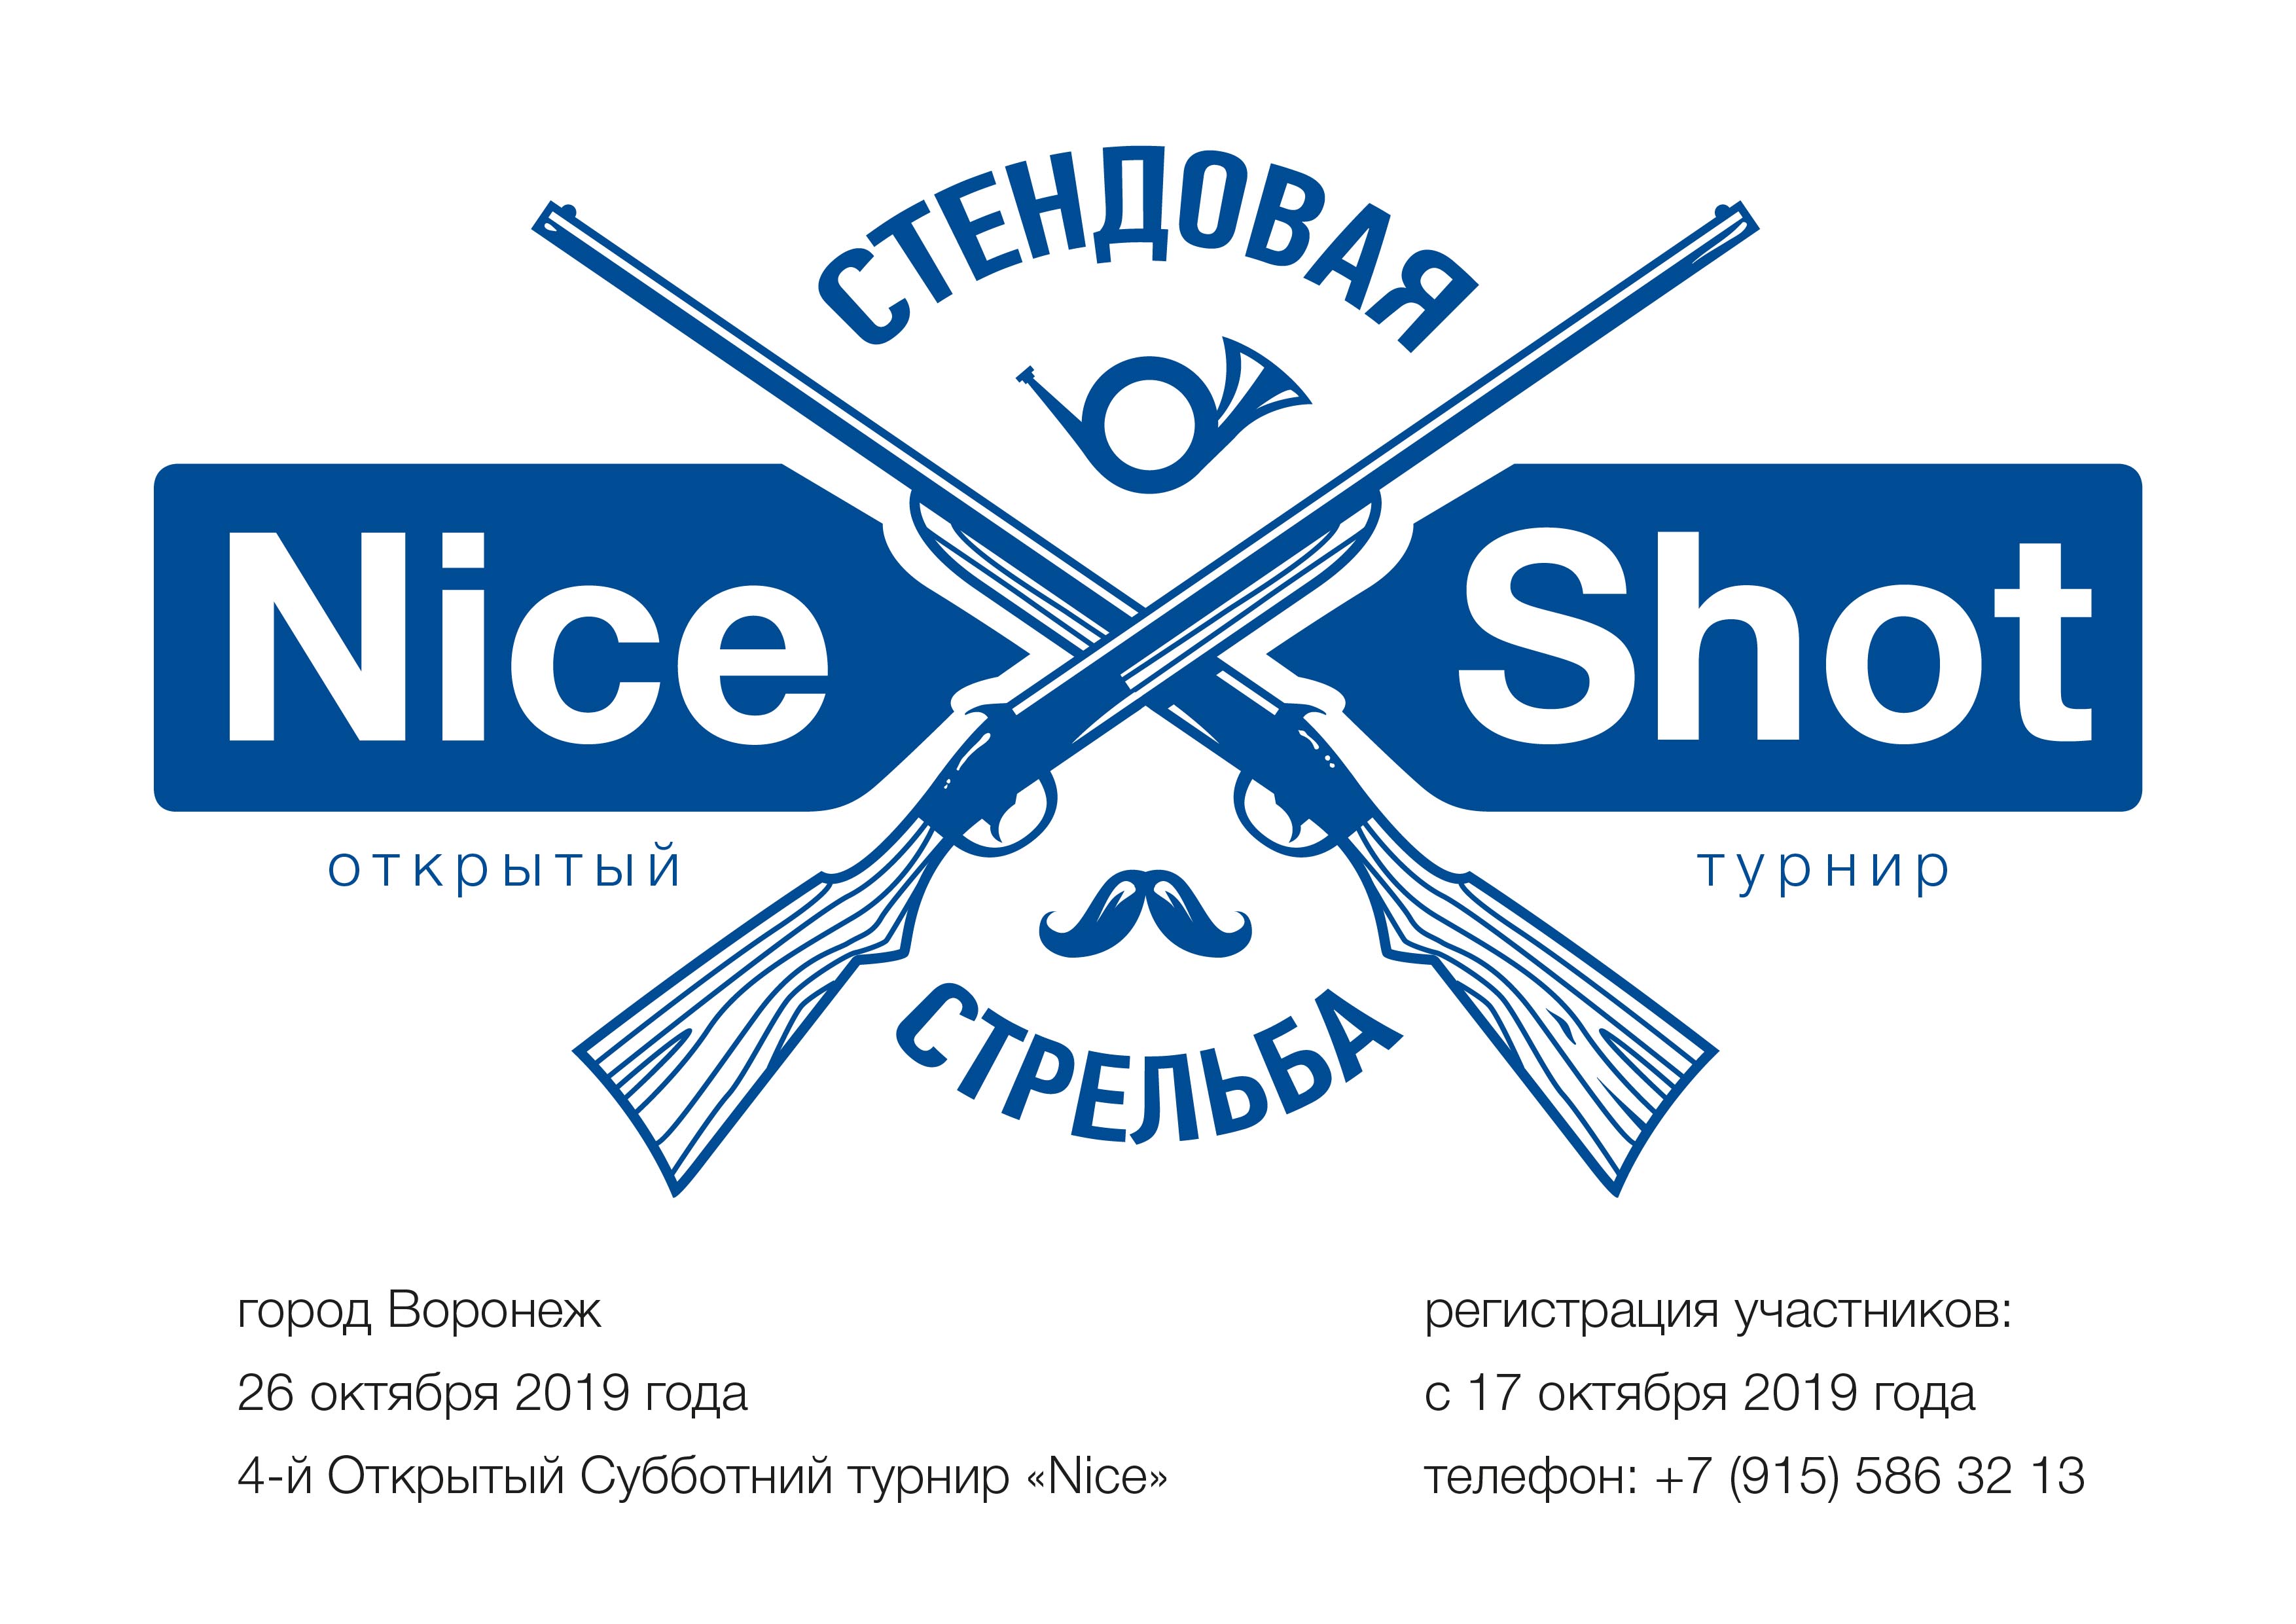 26 октября 2019 года в городе Воронеже состоится 4-й Открытый Субботний турнир «Nice» по стендовой стрельбе!